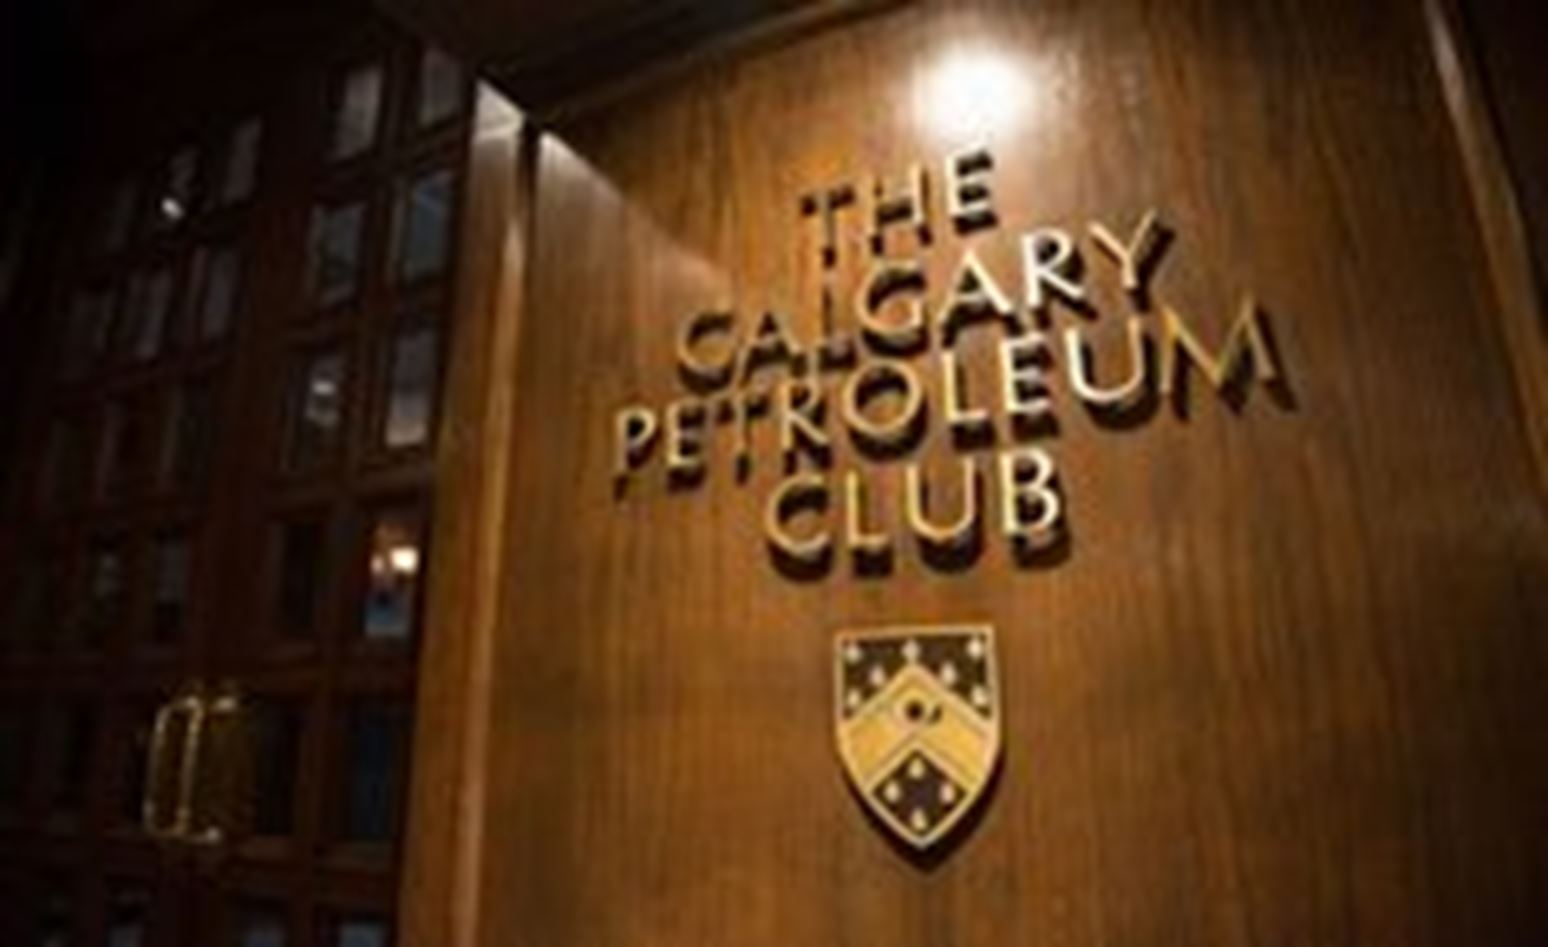 Calgary -petroleum -club